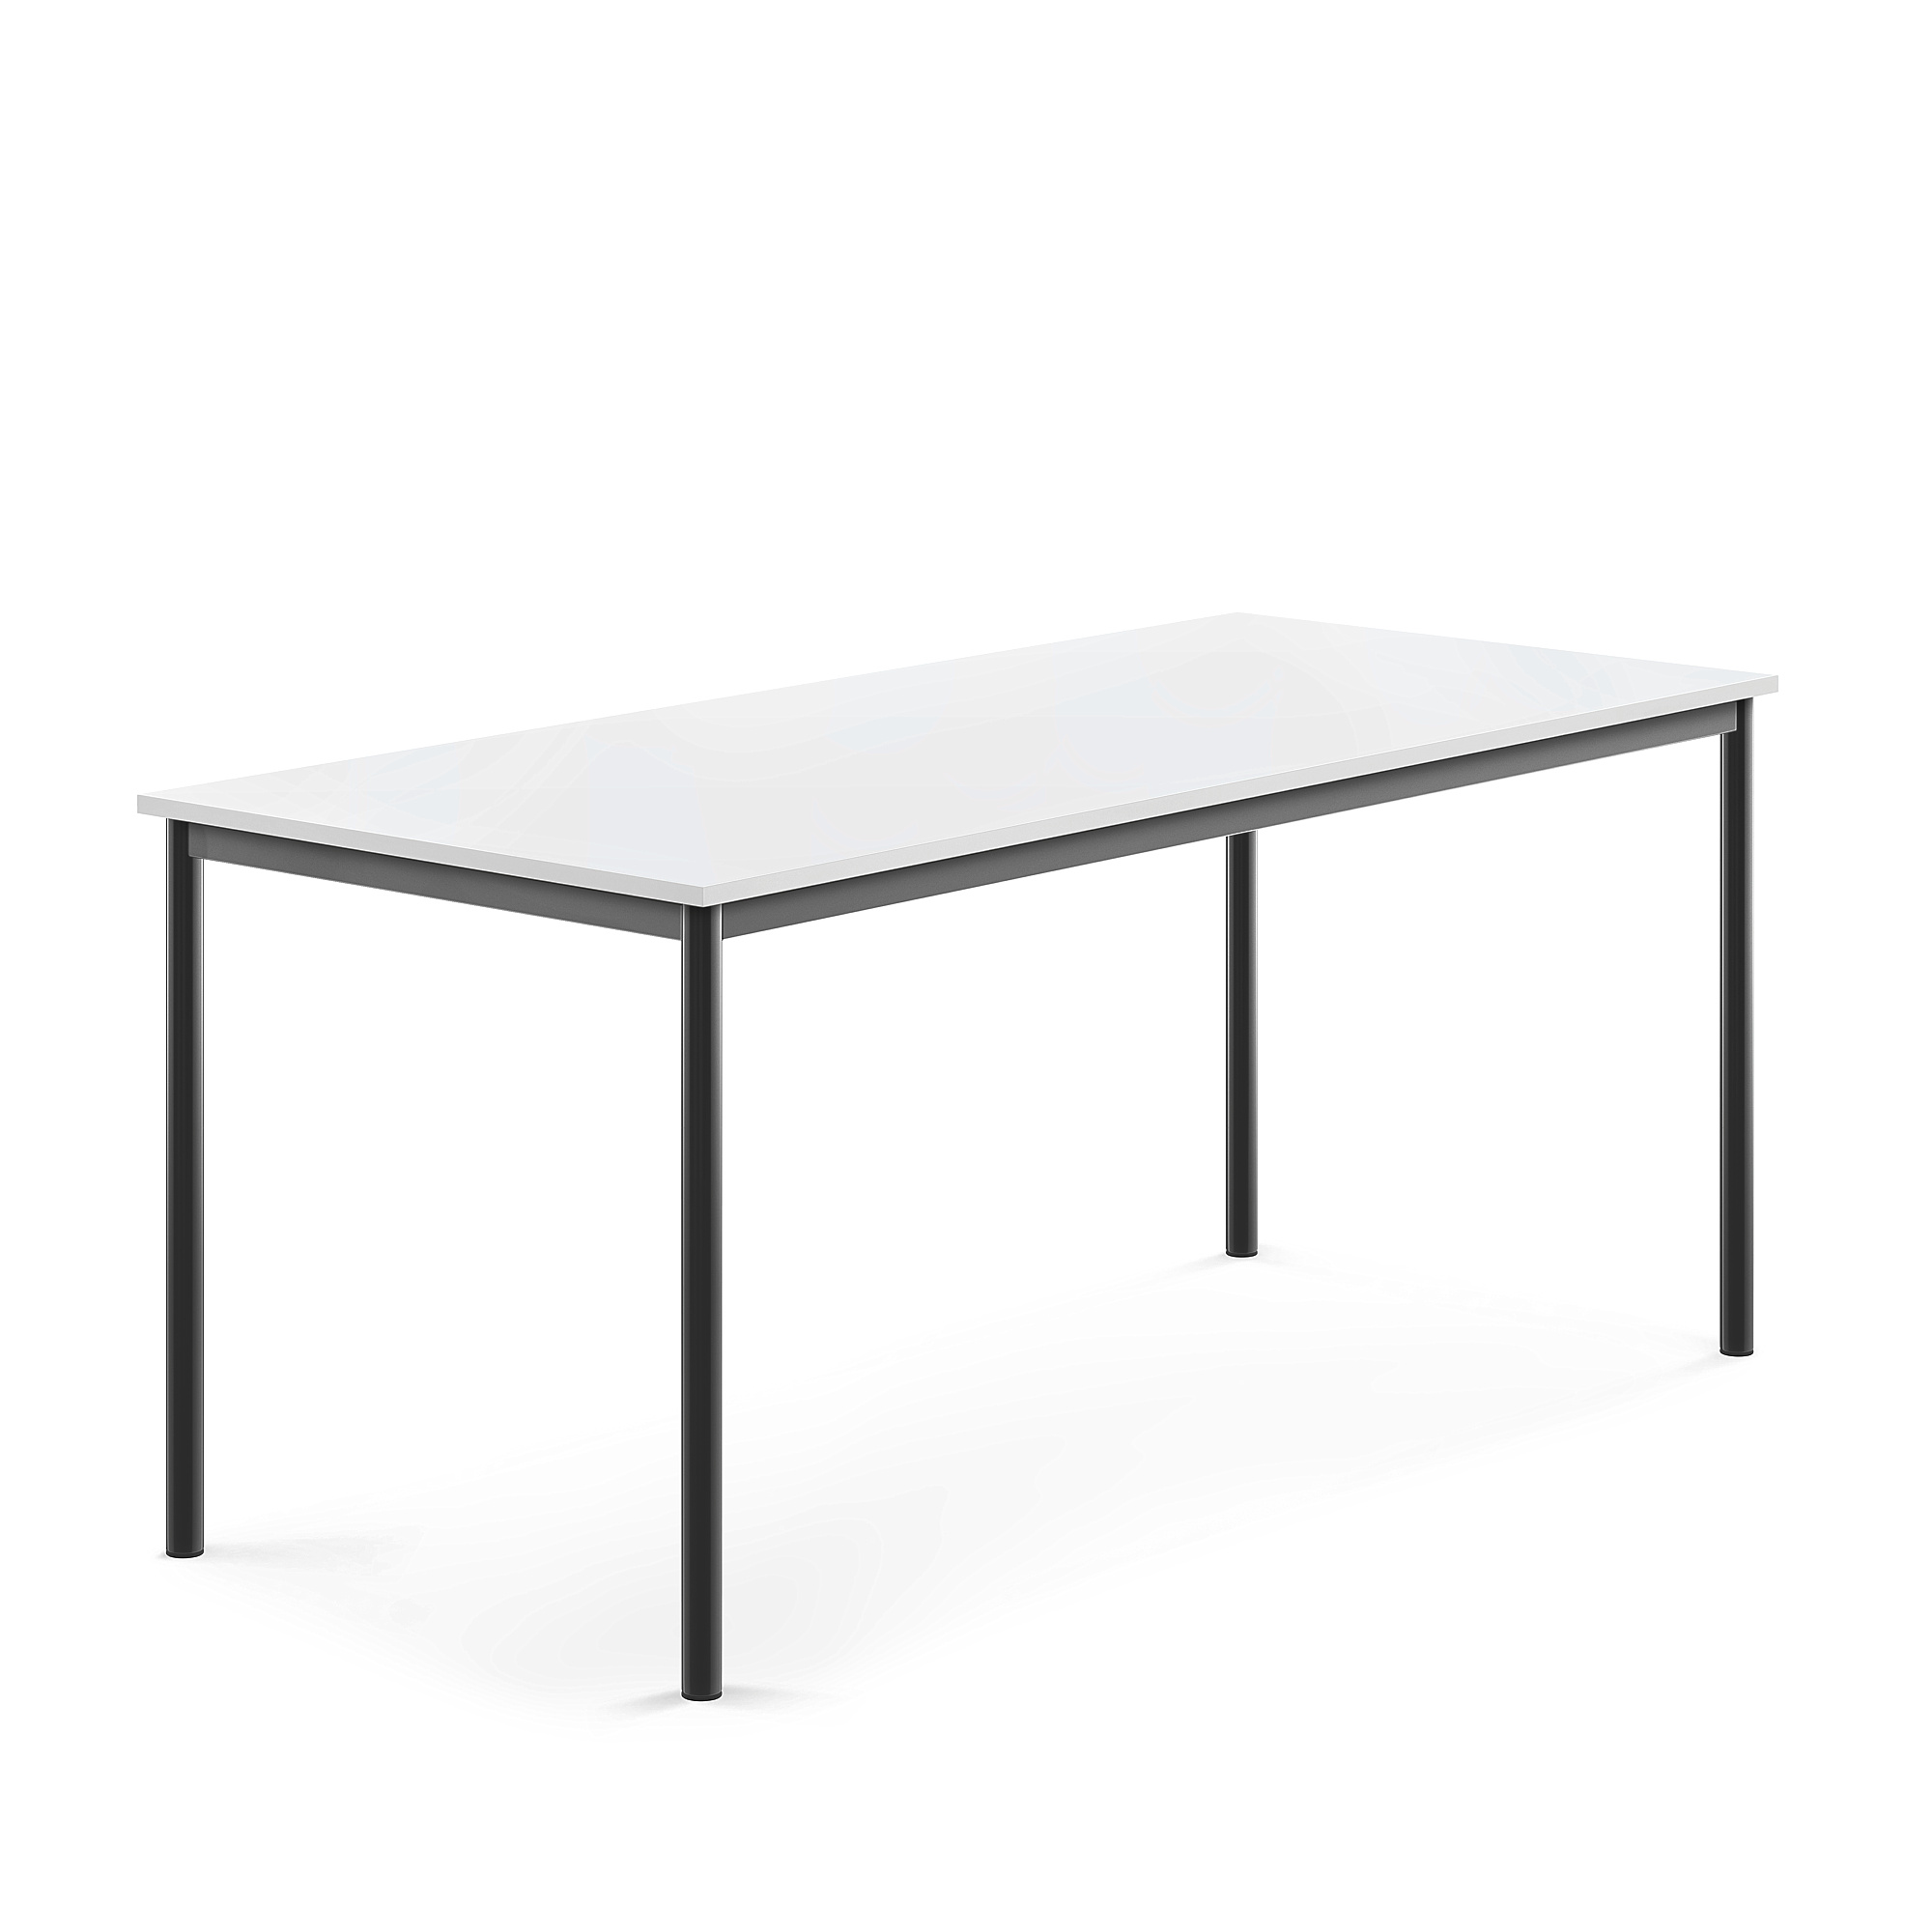 Stůl SONITUS, 1800x800x760 mm, antracitově šedé nohy, HPL deska tlumící hluk, bílá